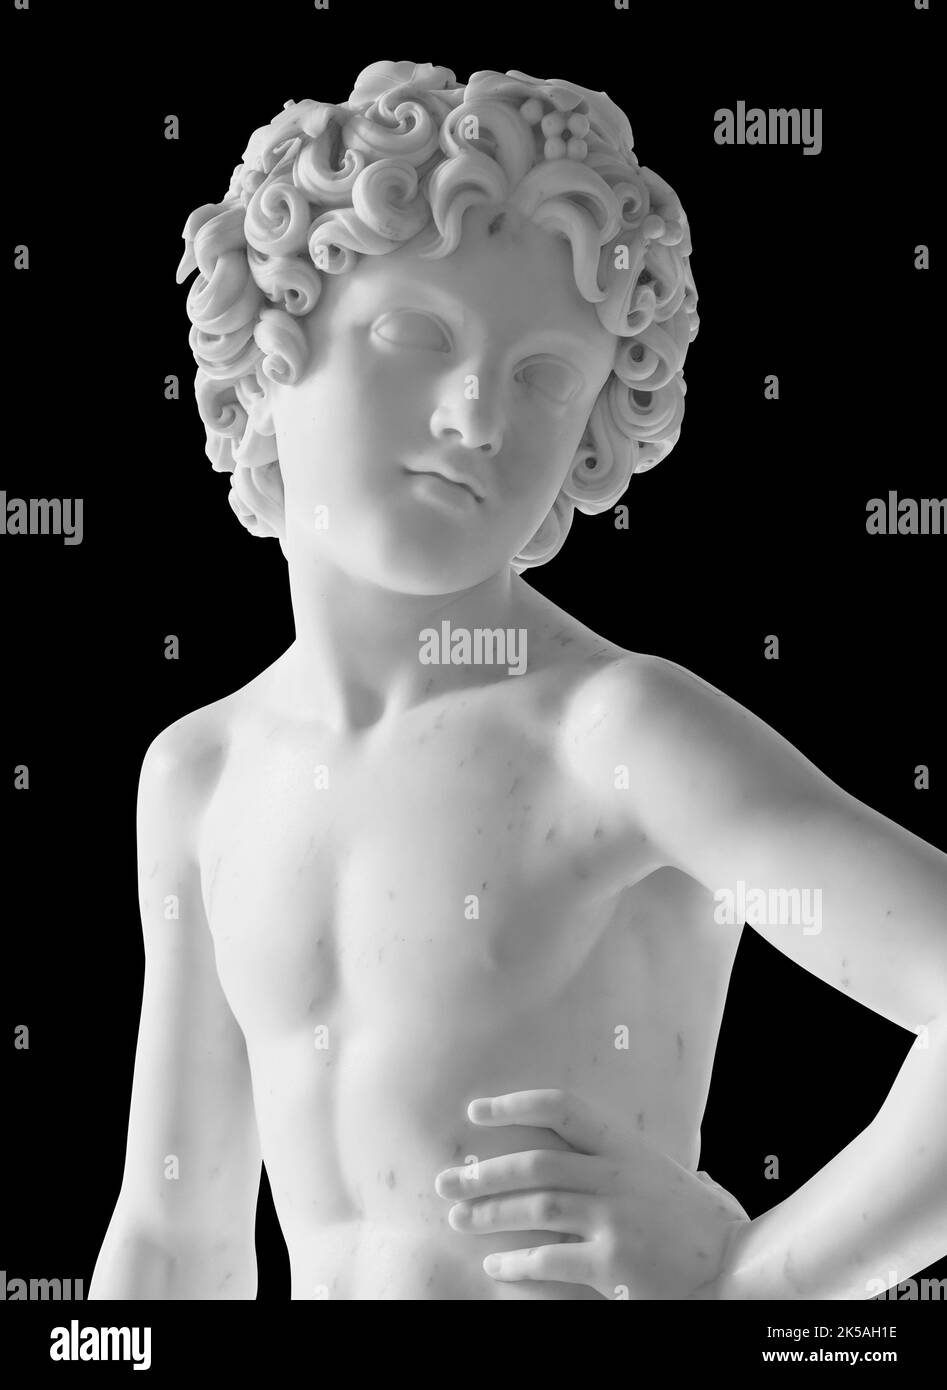 Statue ancienne. Sculpture de Bacchus de Lorenzo Bartolini au Musée de l'Ermitage. Photo isolée de chef-d'œuvre avec masque Banque D'Images